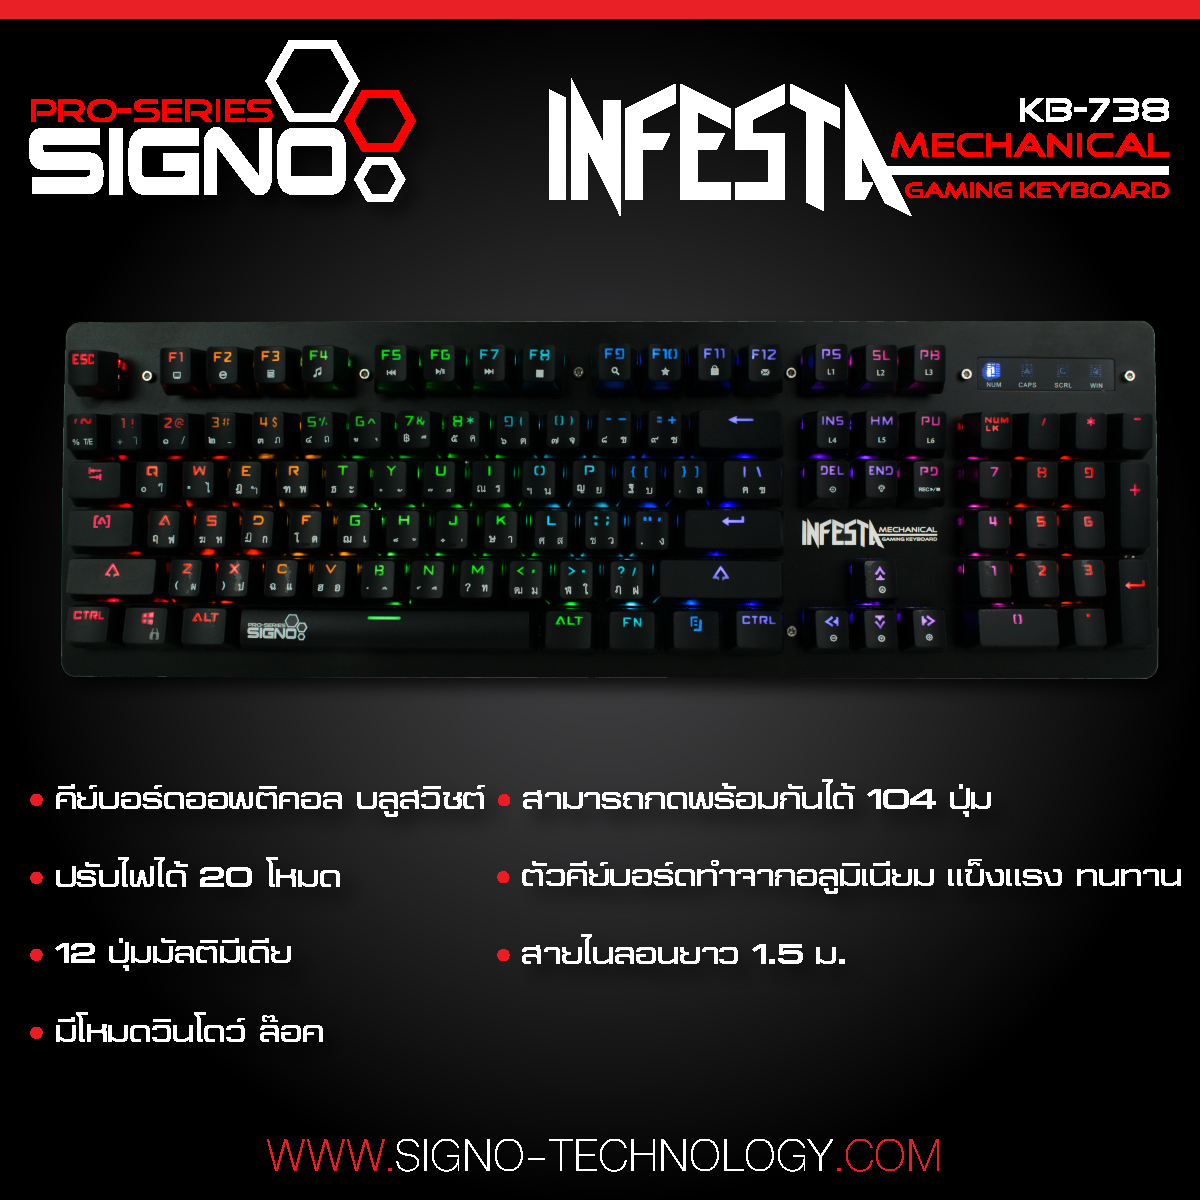 ขาย Signo E-Sport KB-738 INFESTA Mechanical Gaming Keyboard ...